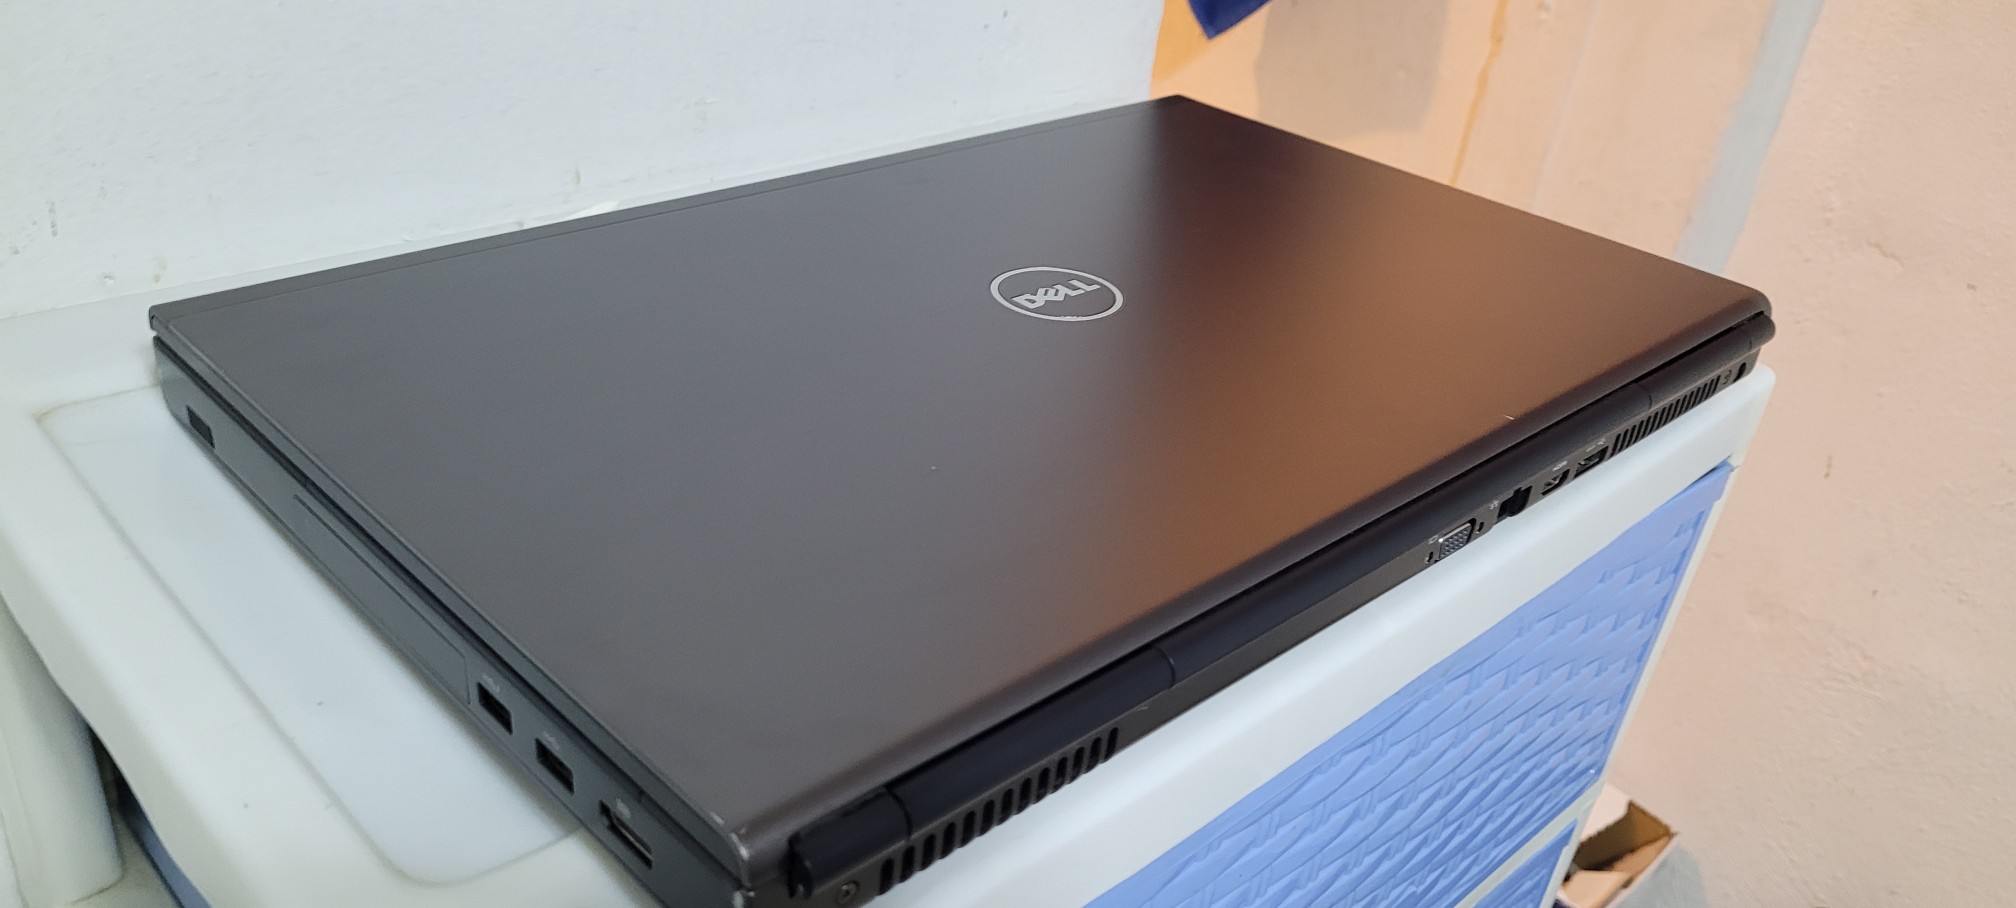 computadoras y laptops - Dell 4800 17 Pulg Core i7 Ram 16gb Disco 1000gb Aty Radeon 2gb Dedicada 2